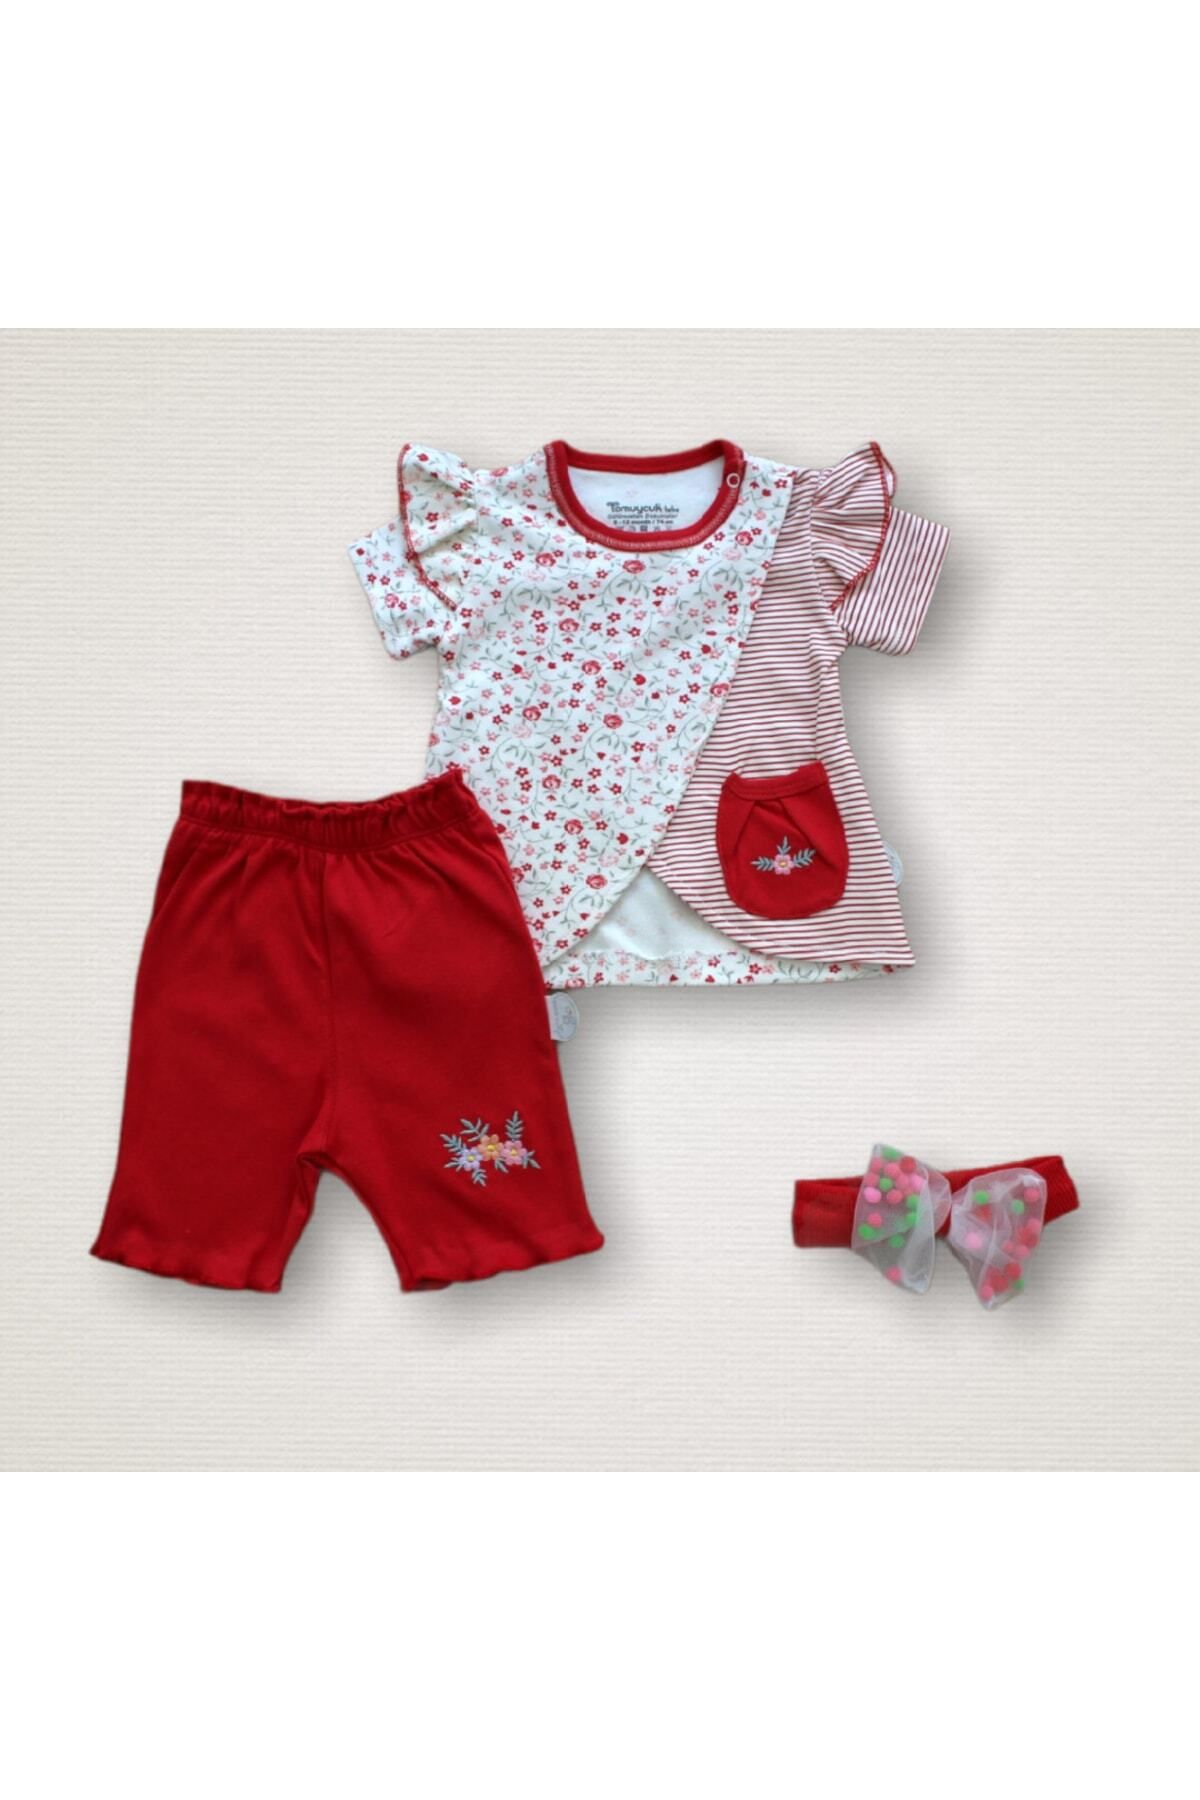 Tomuycuk 3'lü Kız Bebek Çocuk Takım Sweatli Kırmızı Yazlık 3-6-9-12 Ay Bebek Takımları Kıyafetleri Giysileri